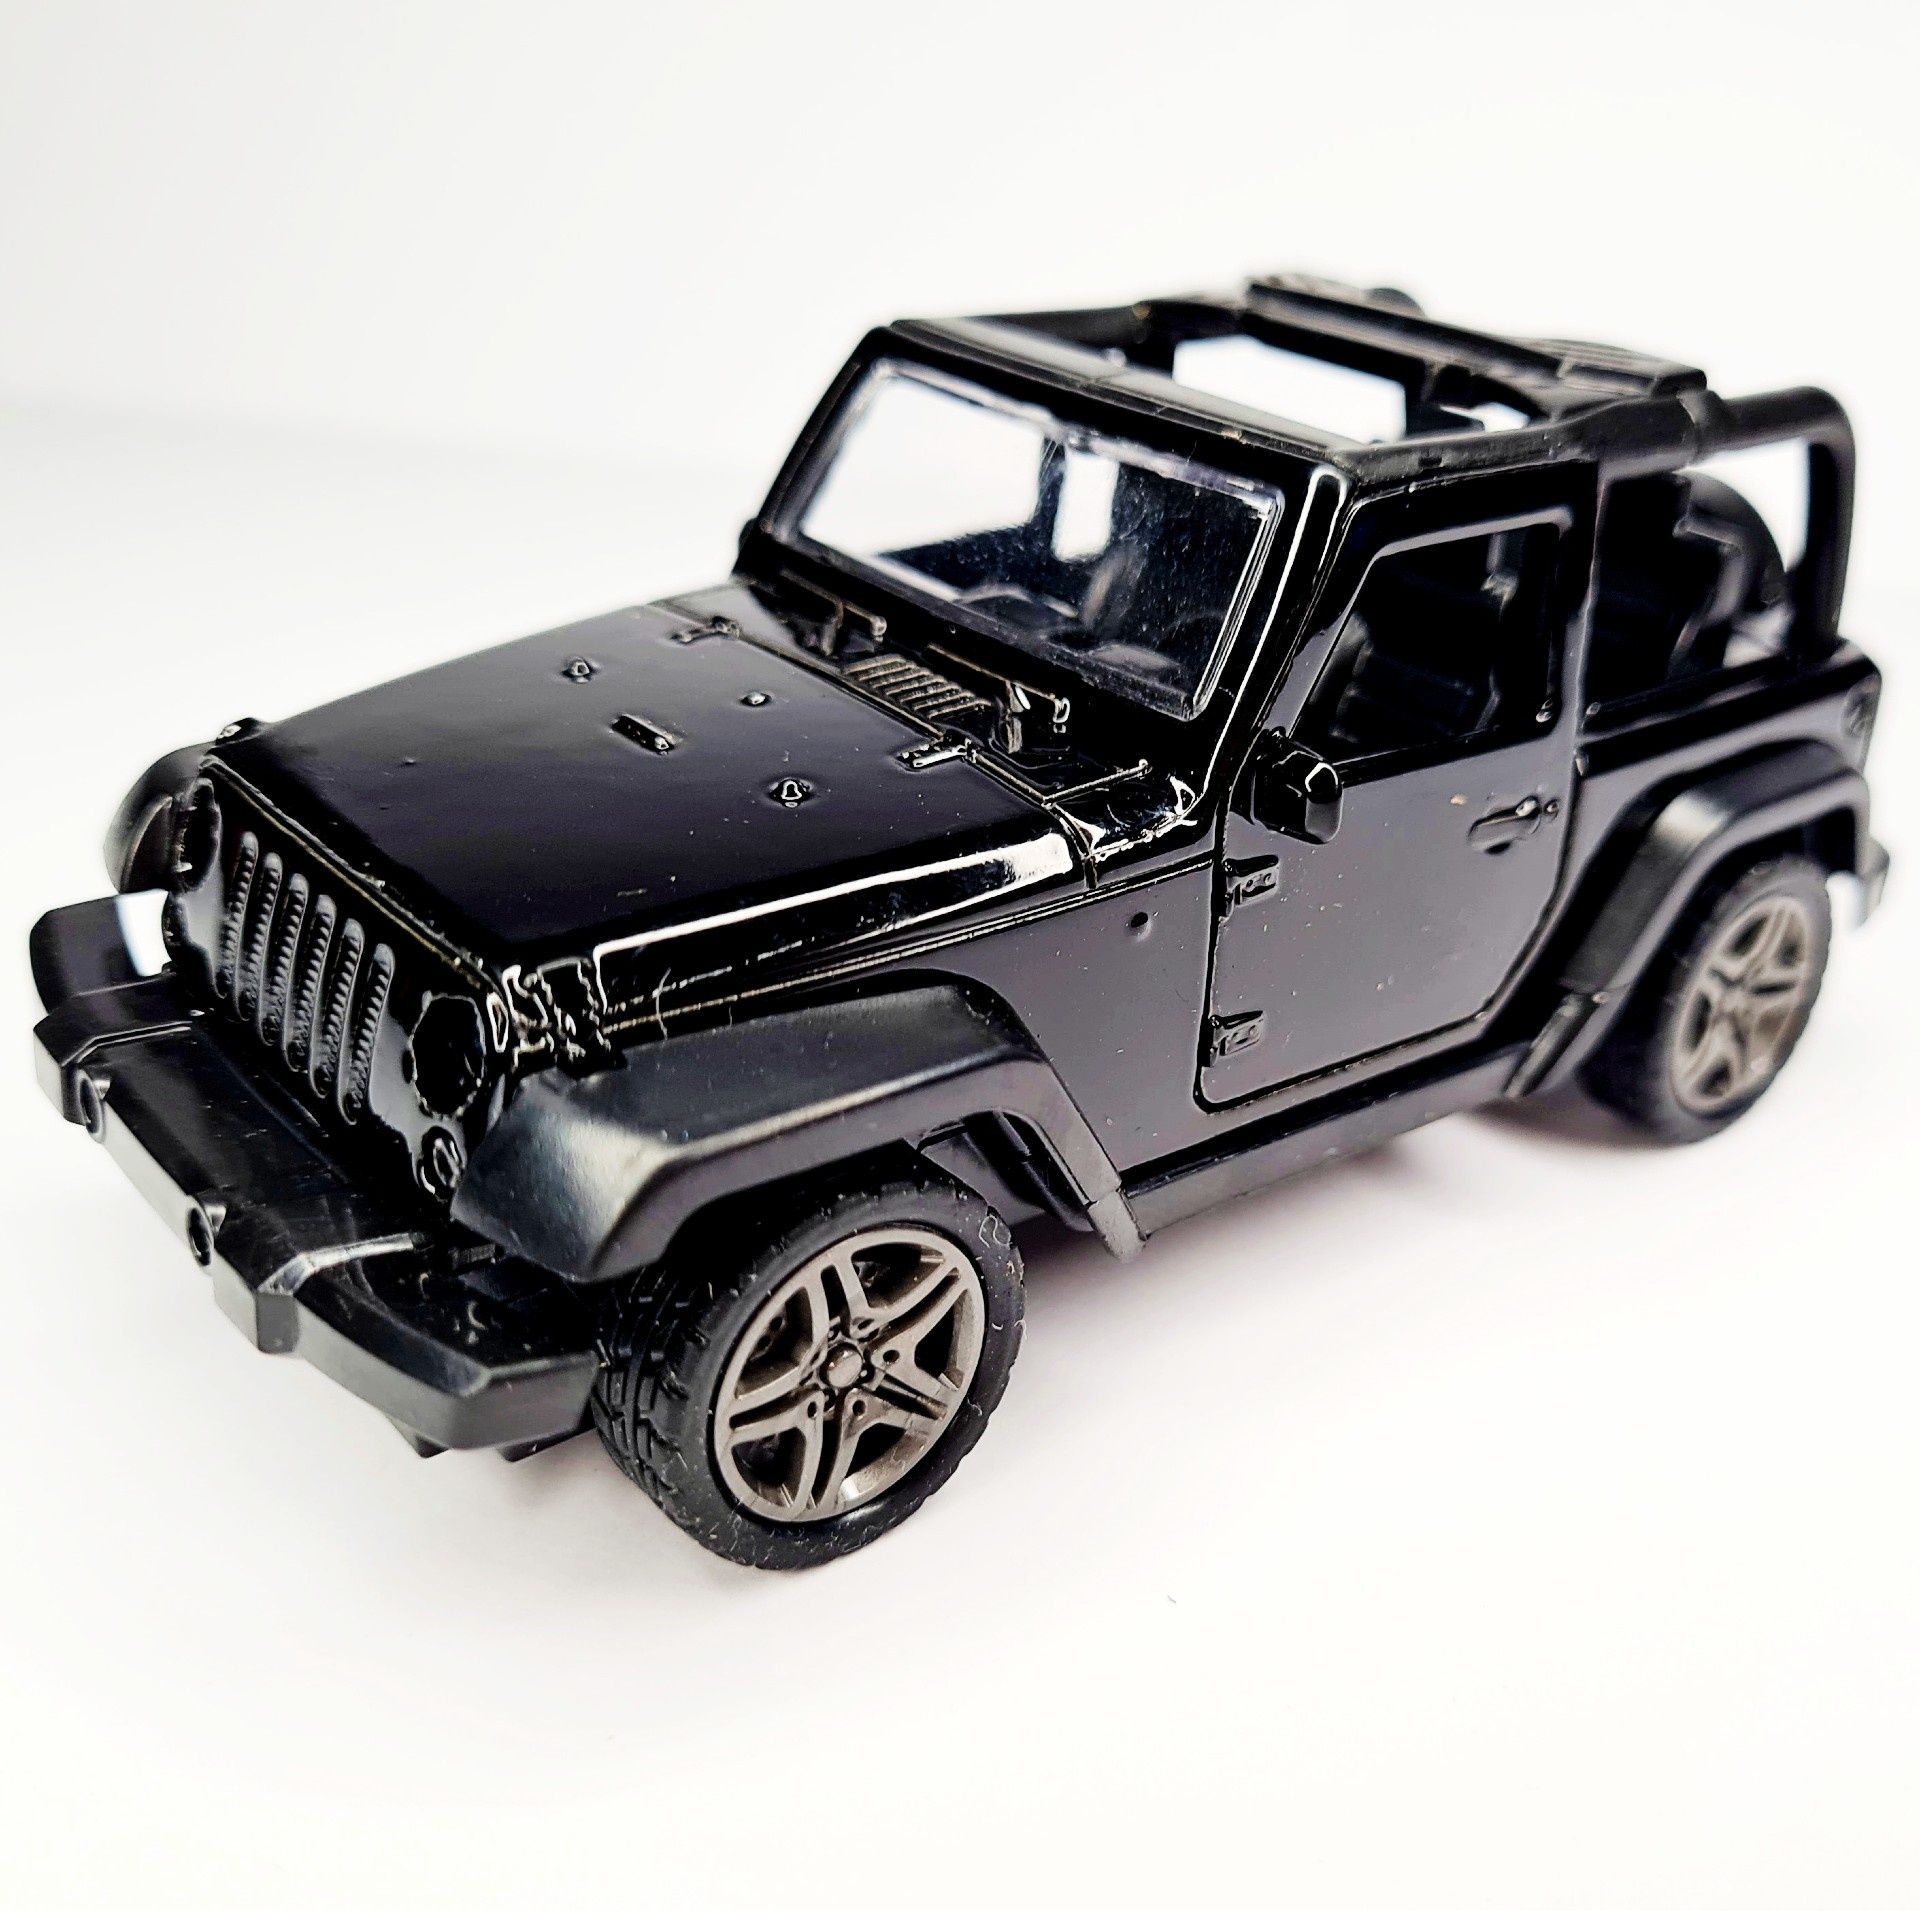 Nowe super autko terenowe samochodzik Jeep czarny - zabawki